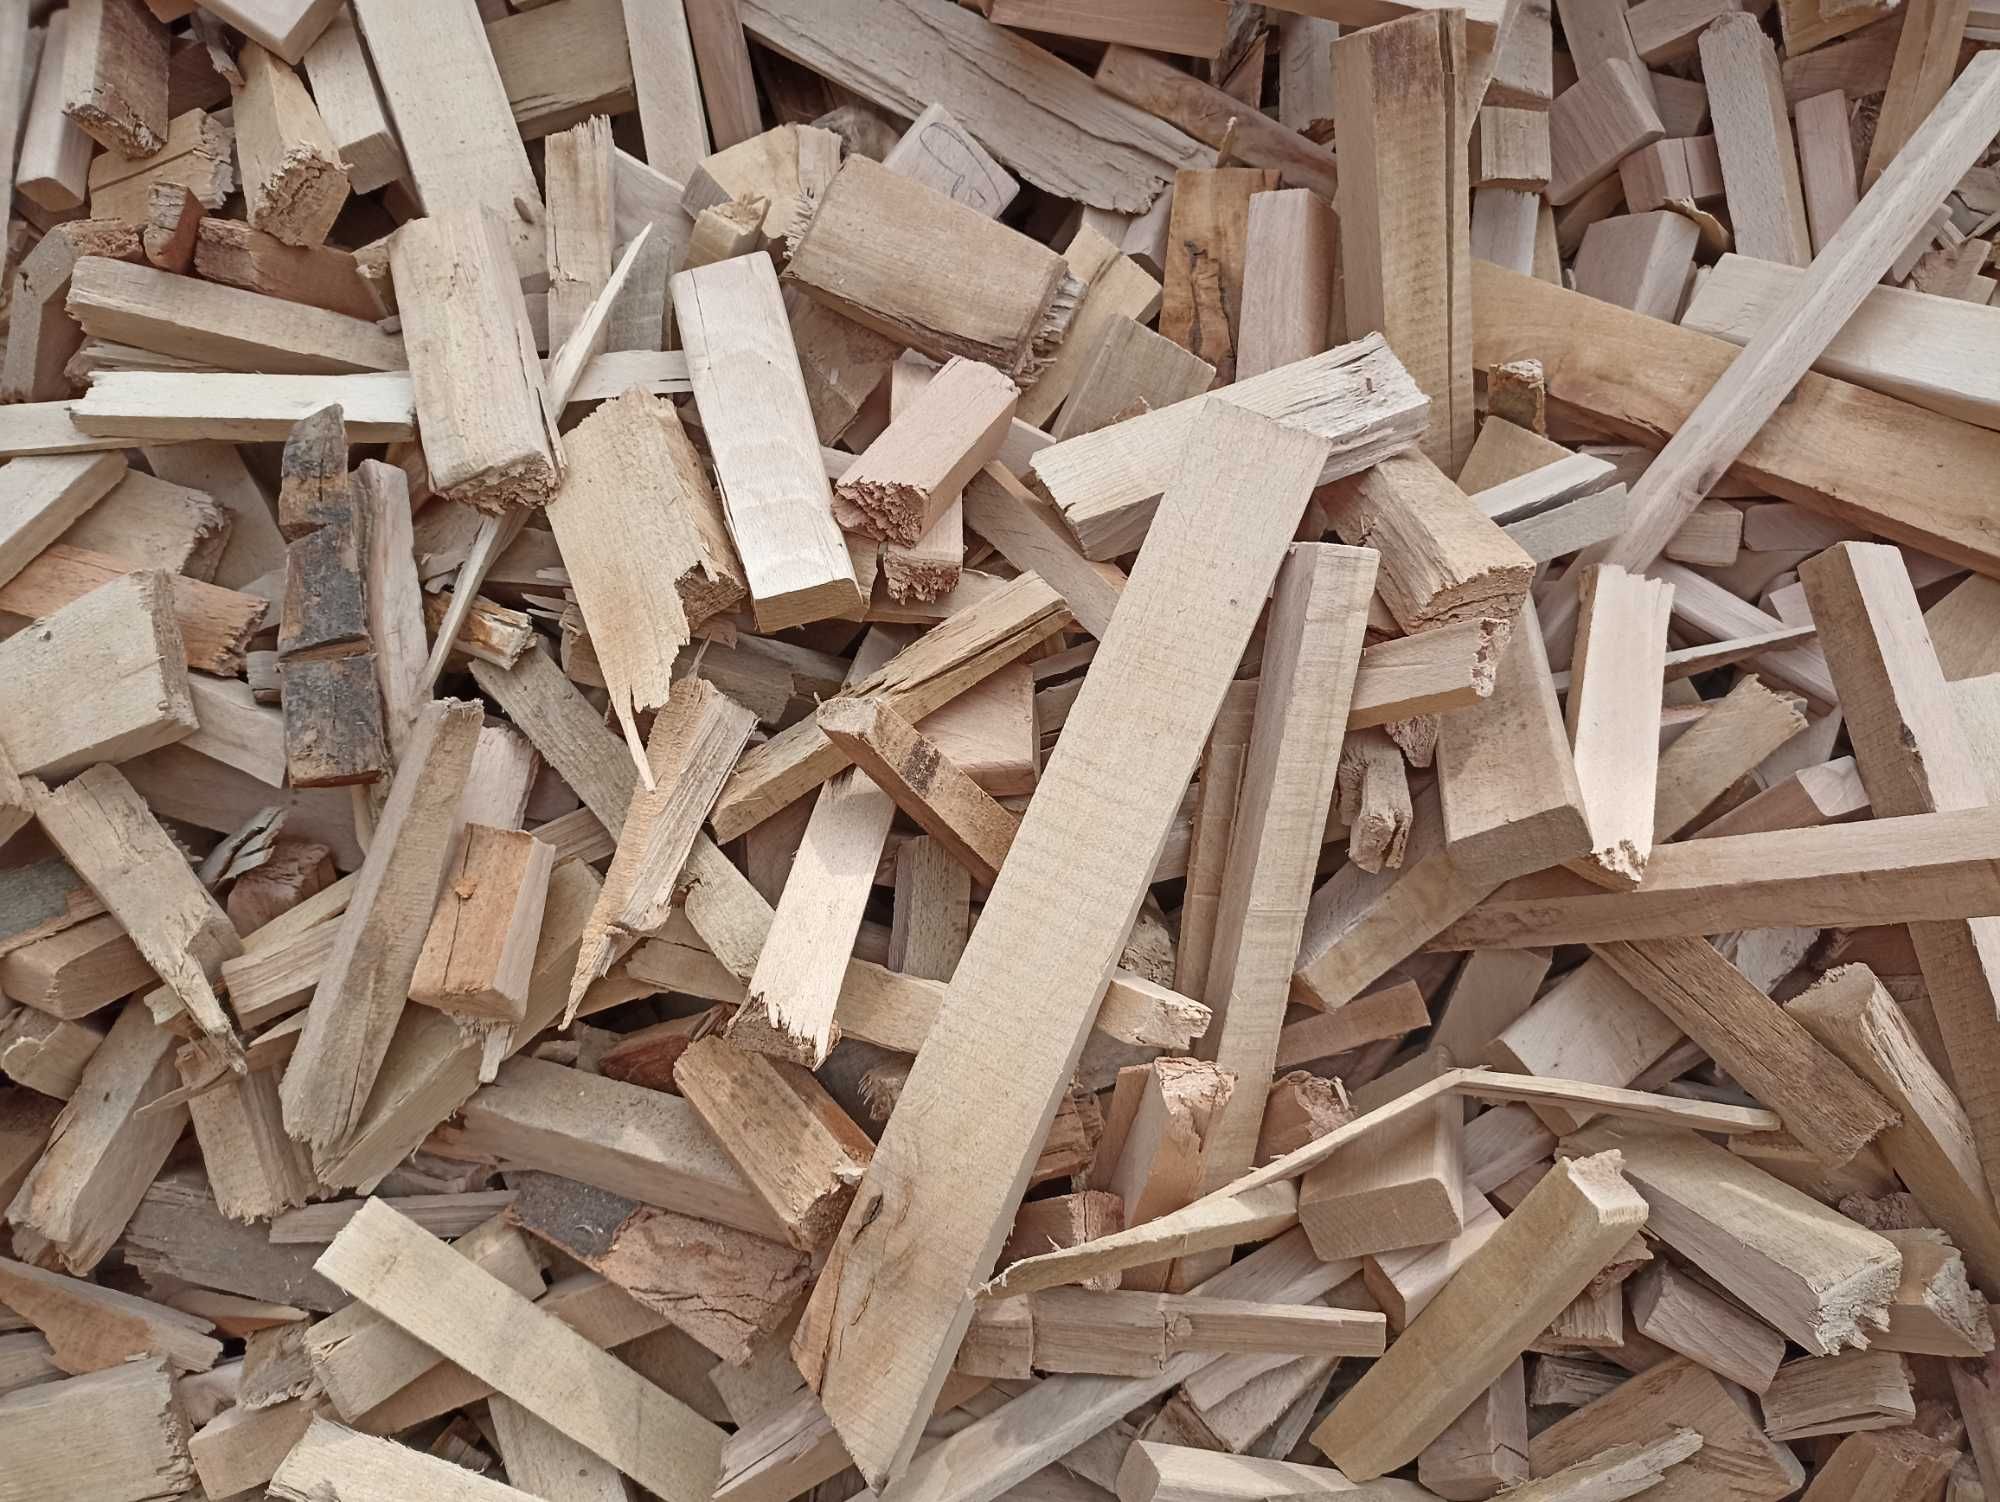 Suche Drewno Opałowe - Suche drewno bukowe